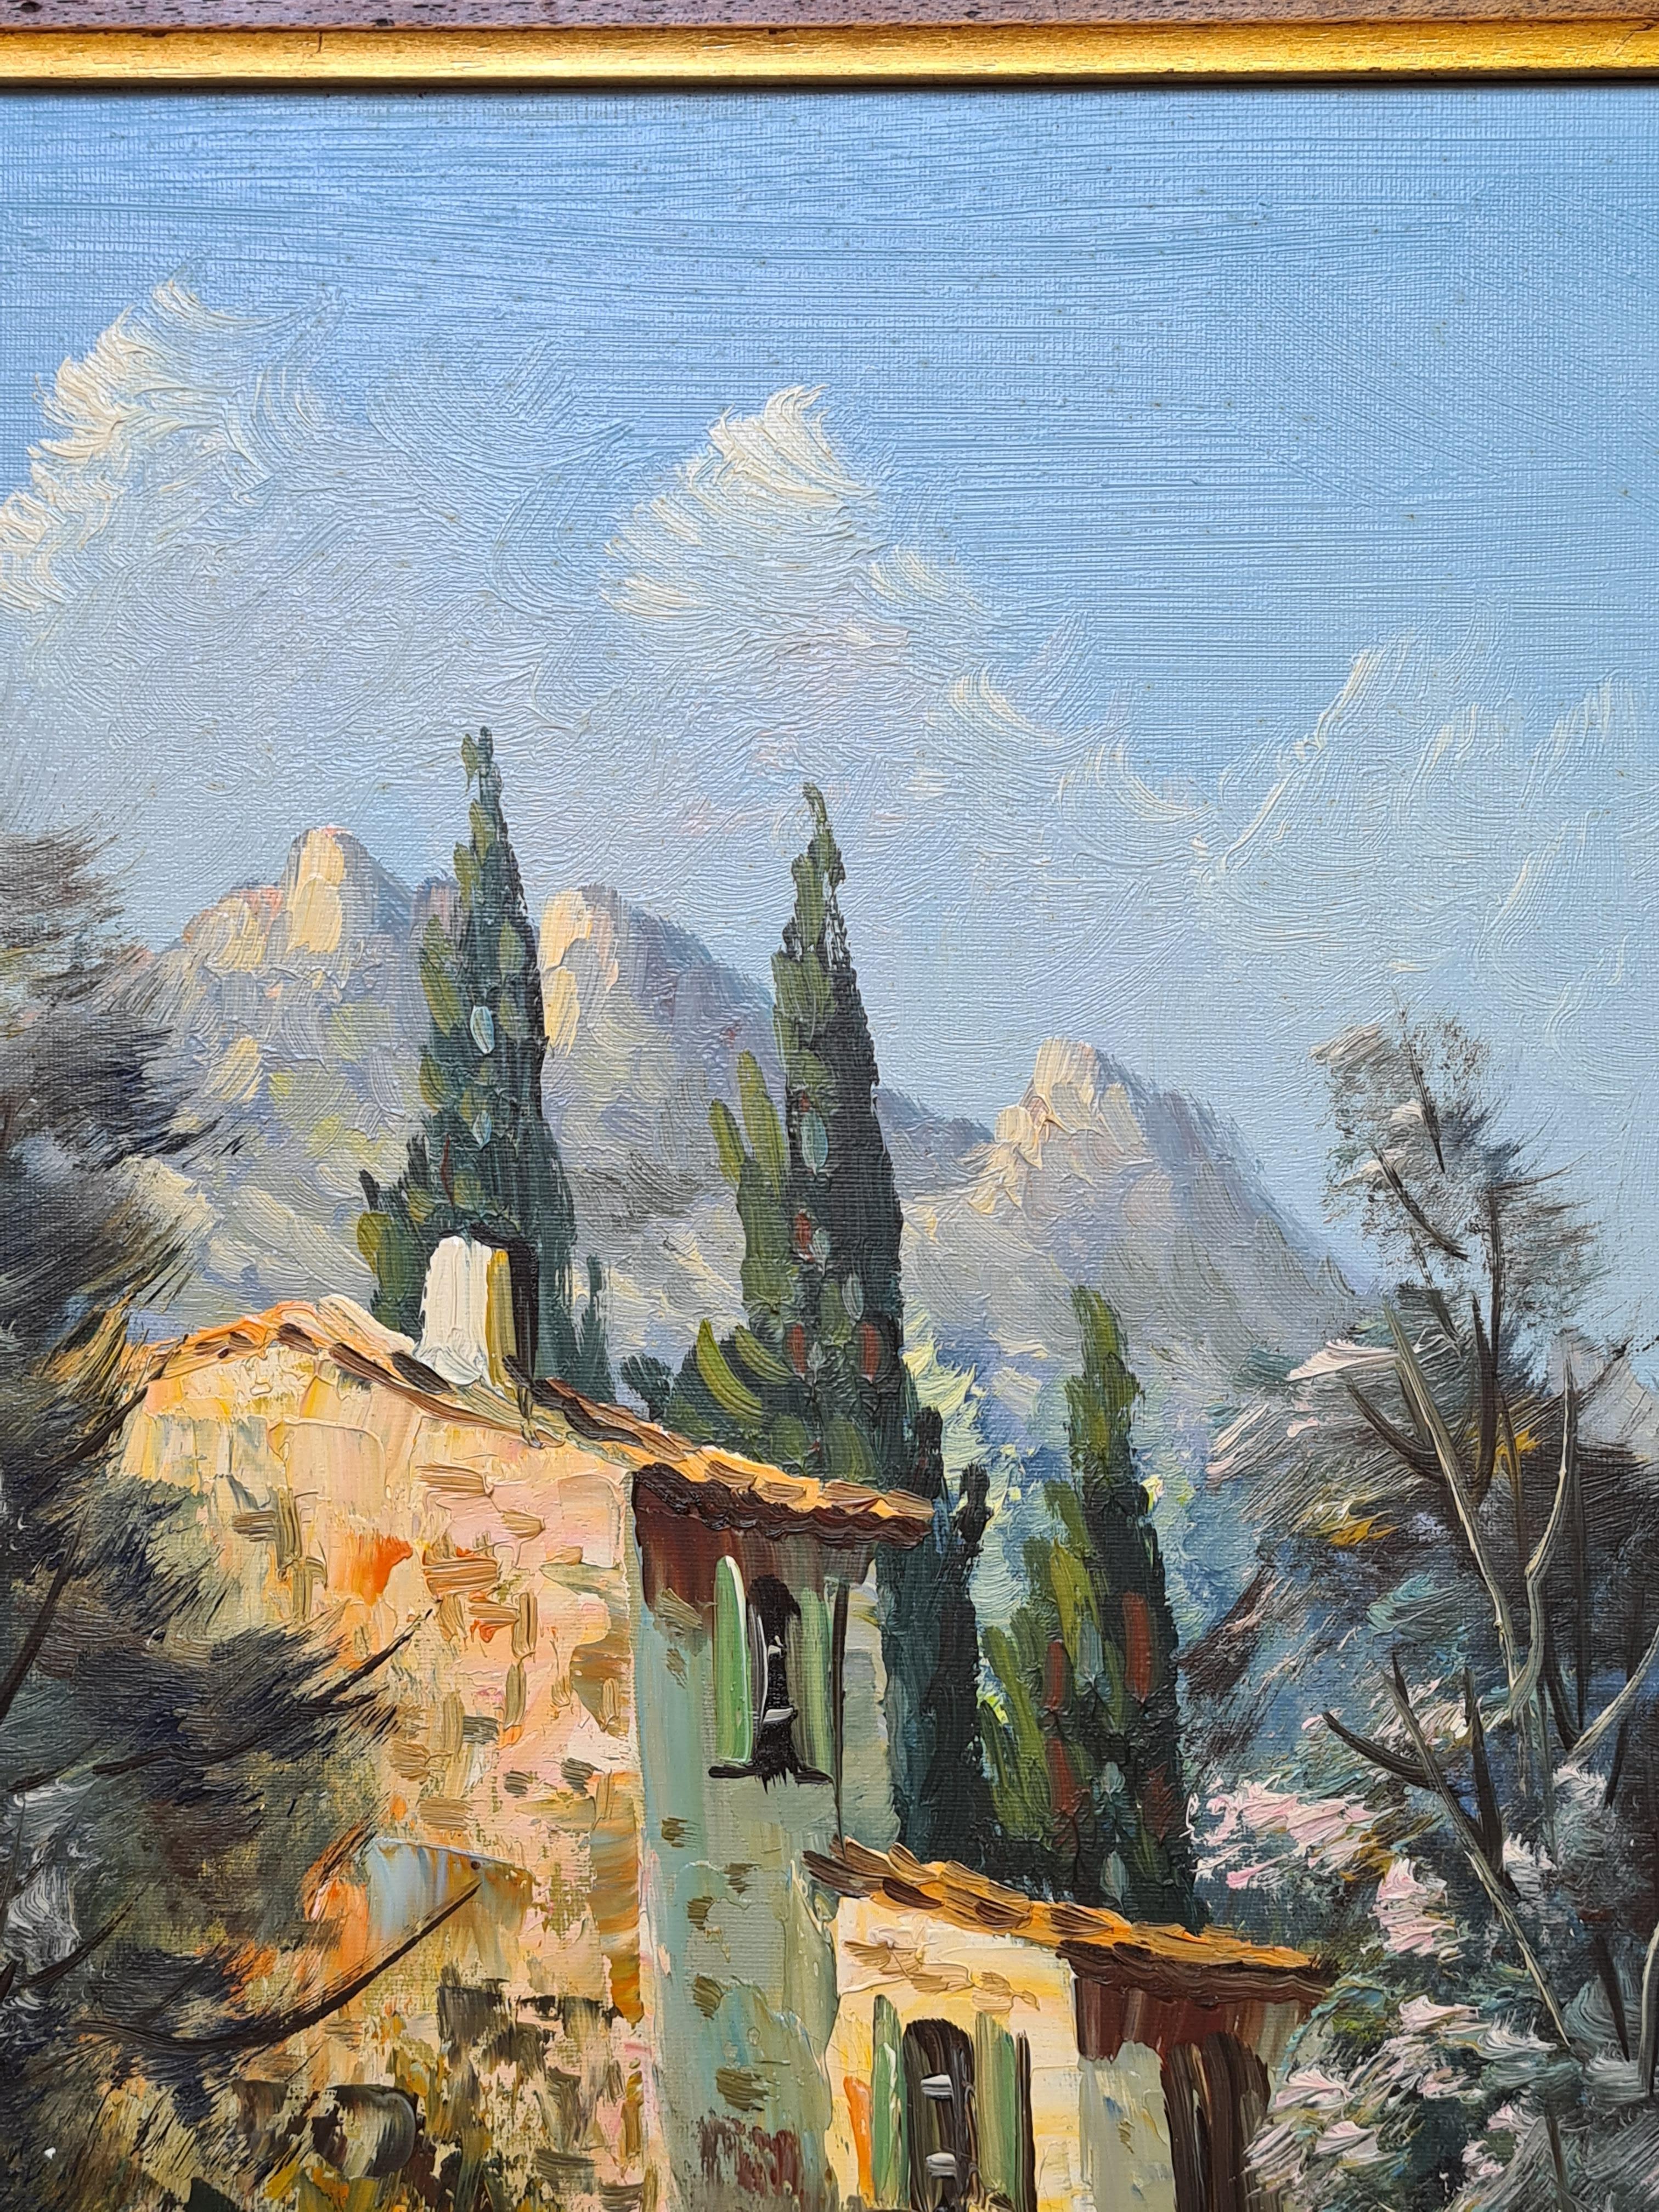 Une huile sur toile représentant une maison en pierre dans un paysage avec des collines au loin. Le tableau est signé en bas à droite, mais la signature n'a pas encore été déchiffrée. L'œuvre est présentée dans un cadre simple en bois avec filet